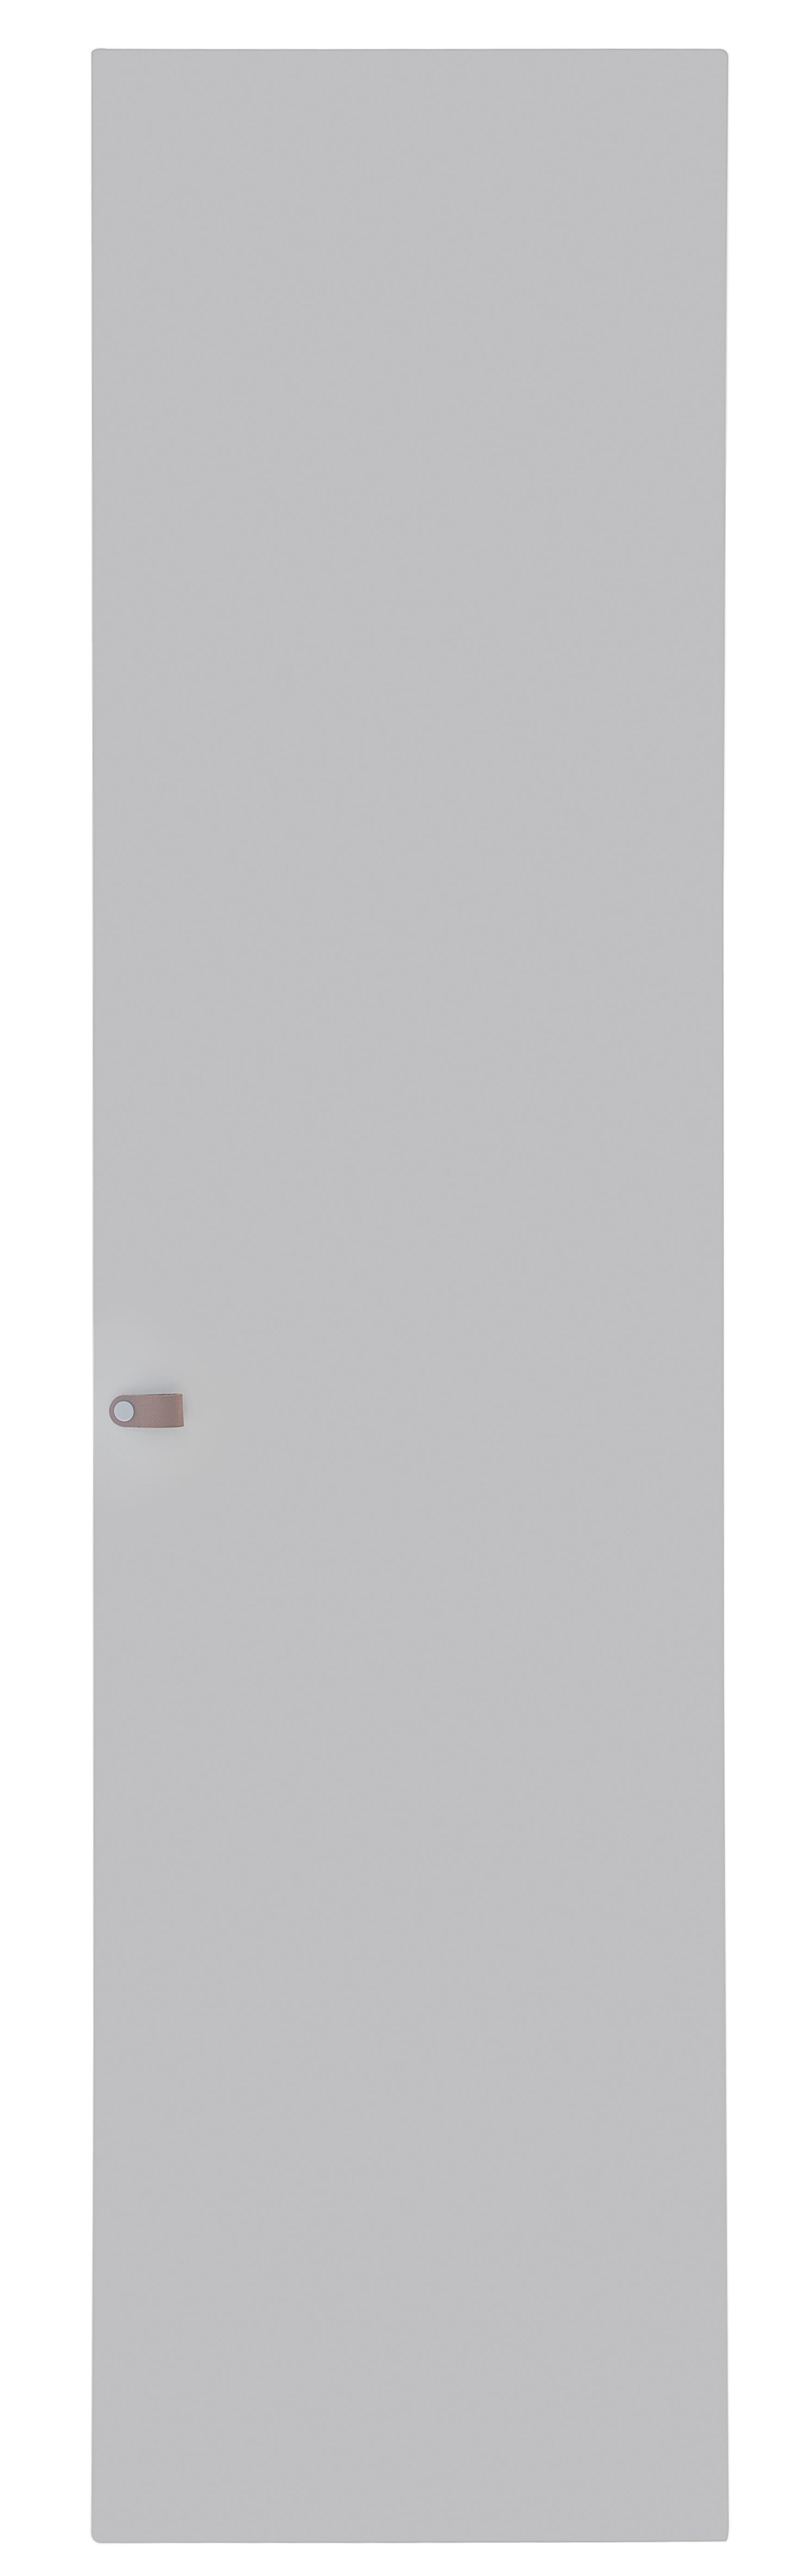 Puerta abatible para armario macao blanco 60x240x1,9 cm